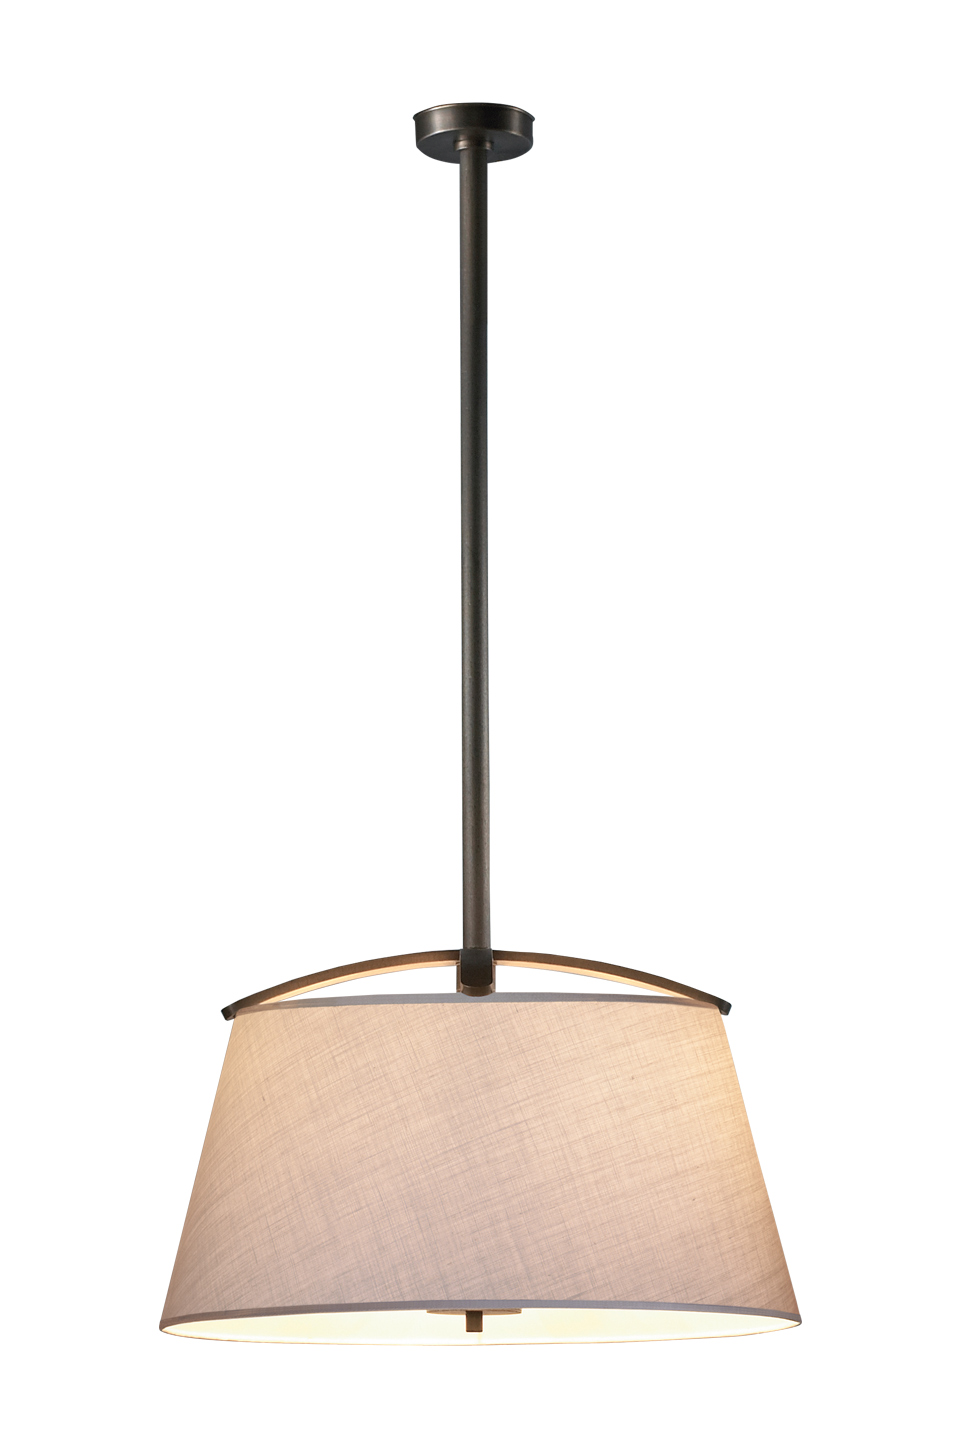 Pia&nbsp;— подвесная светодиодная лампа из бронзы с абажуром ручной работы из каталога Promemoria | Promemoria